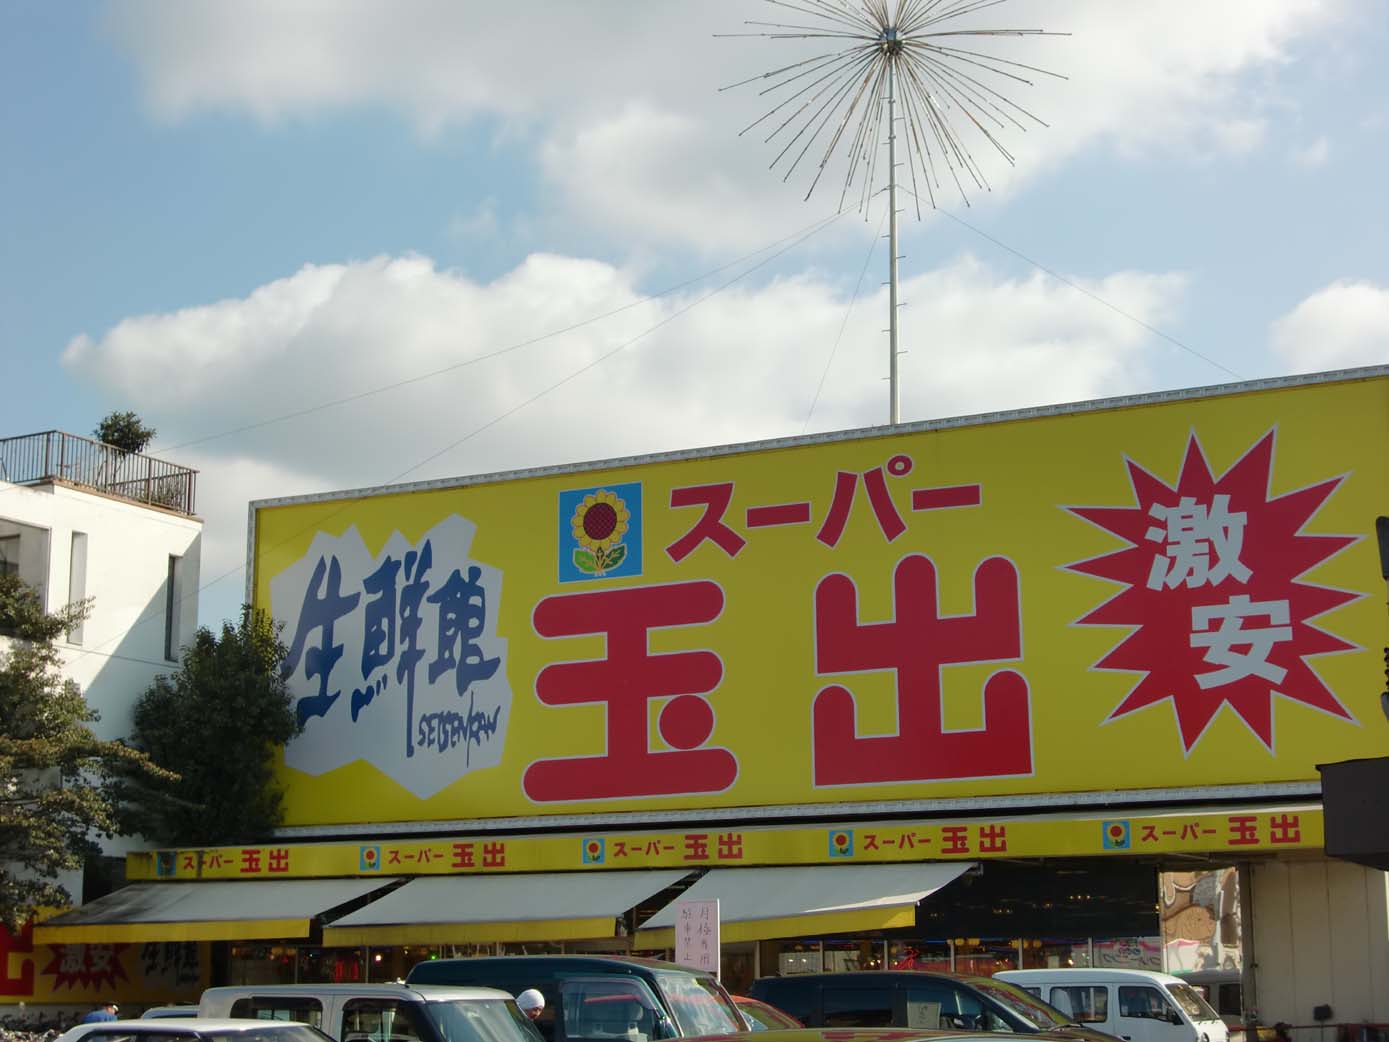 Supermarket. 626m to Super Tamade Amami store (Super)